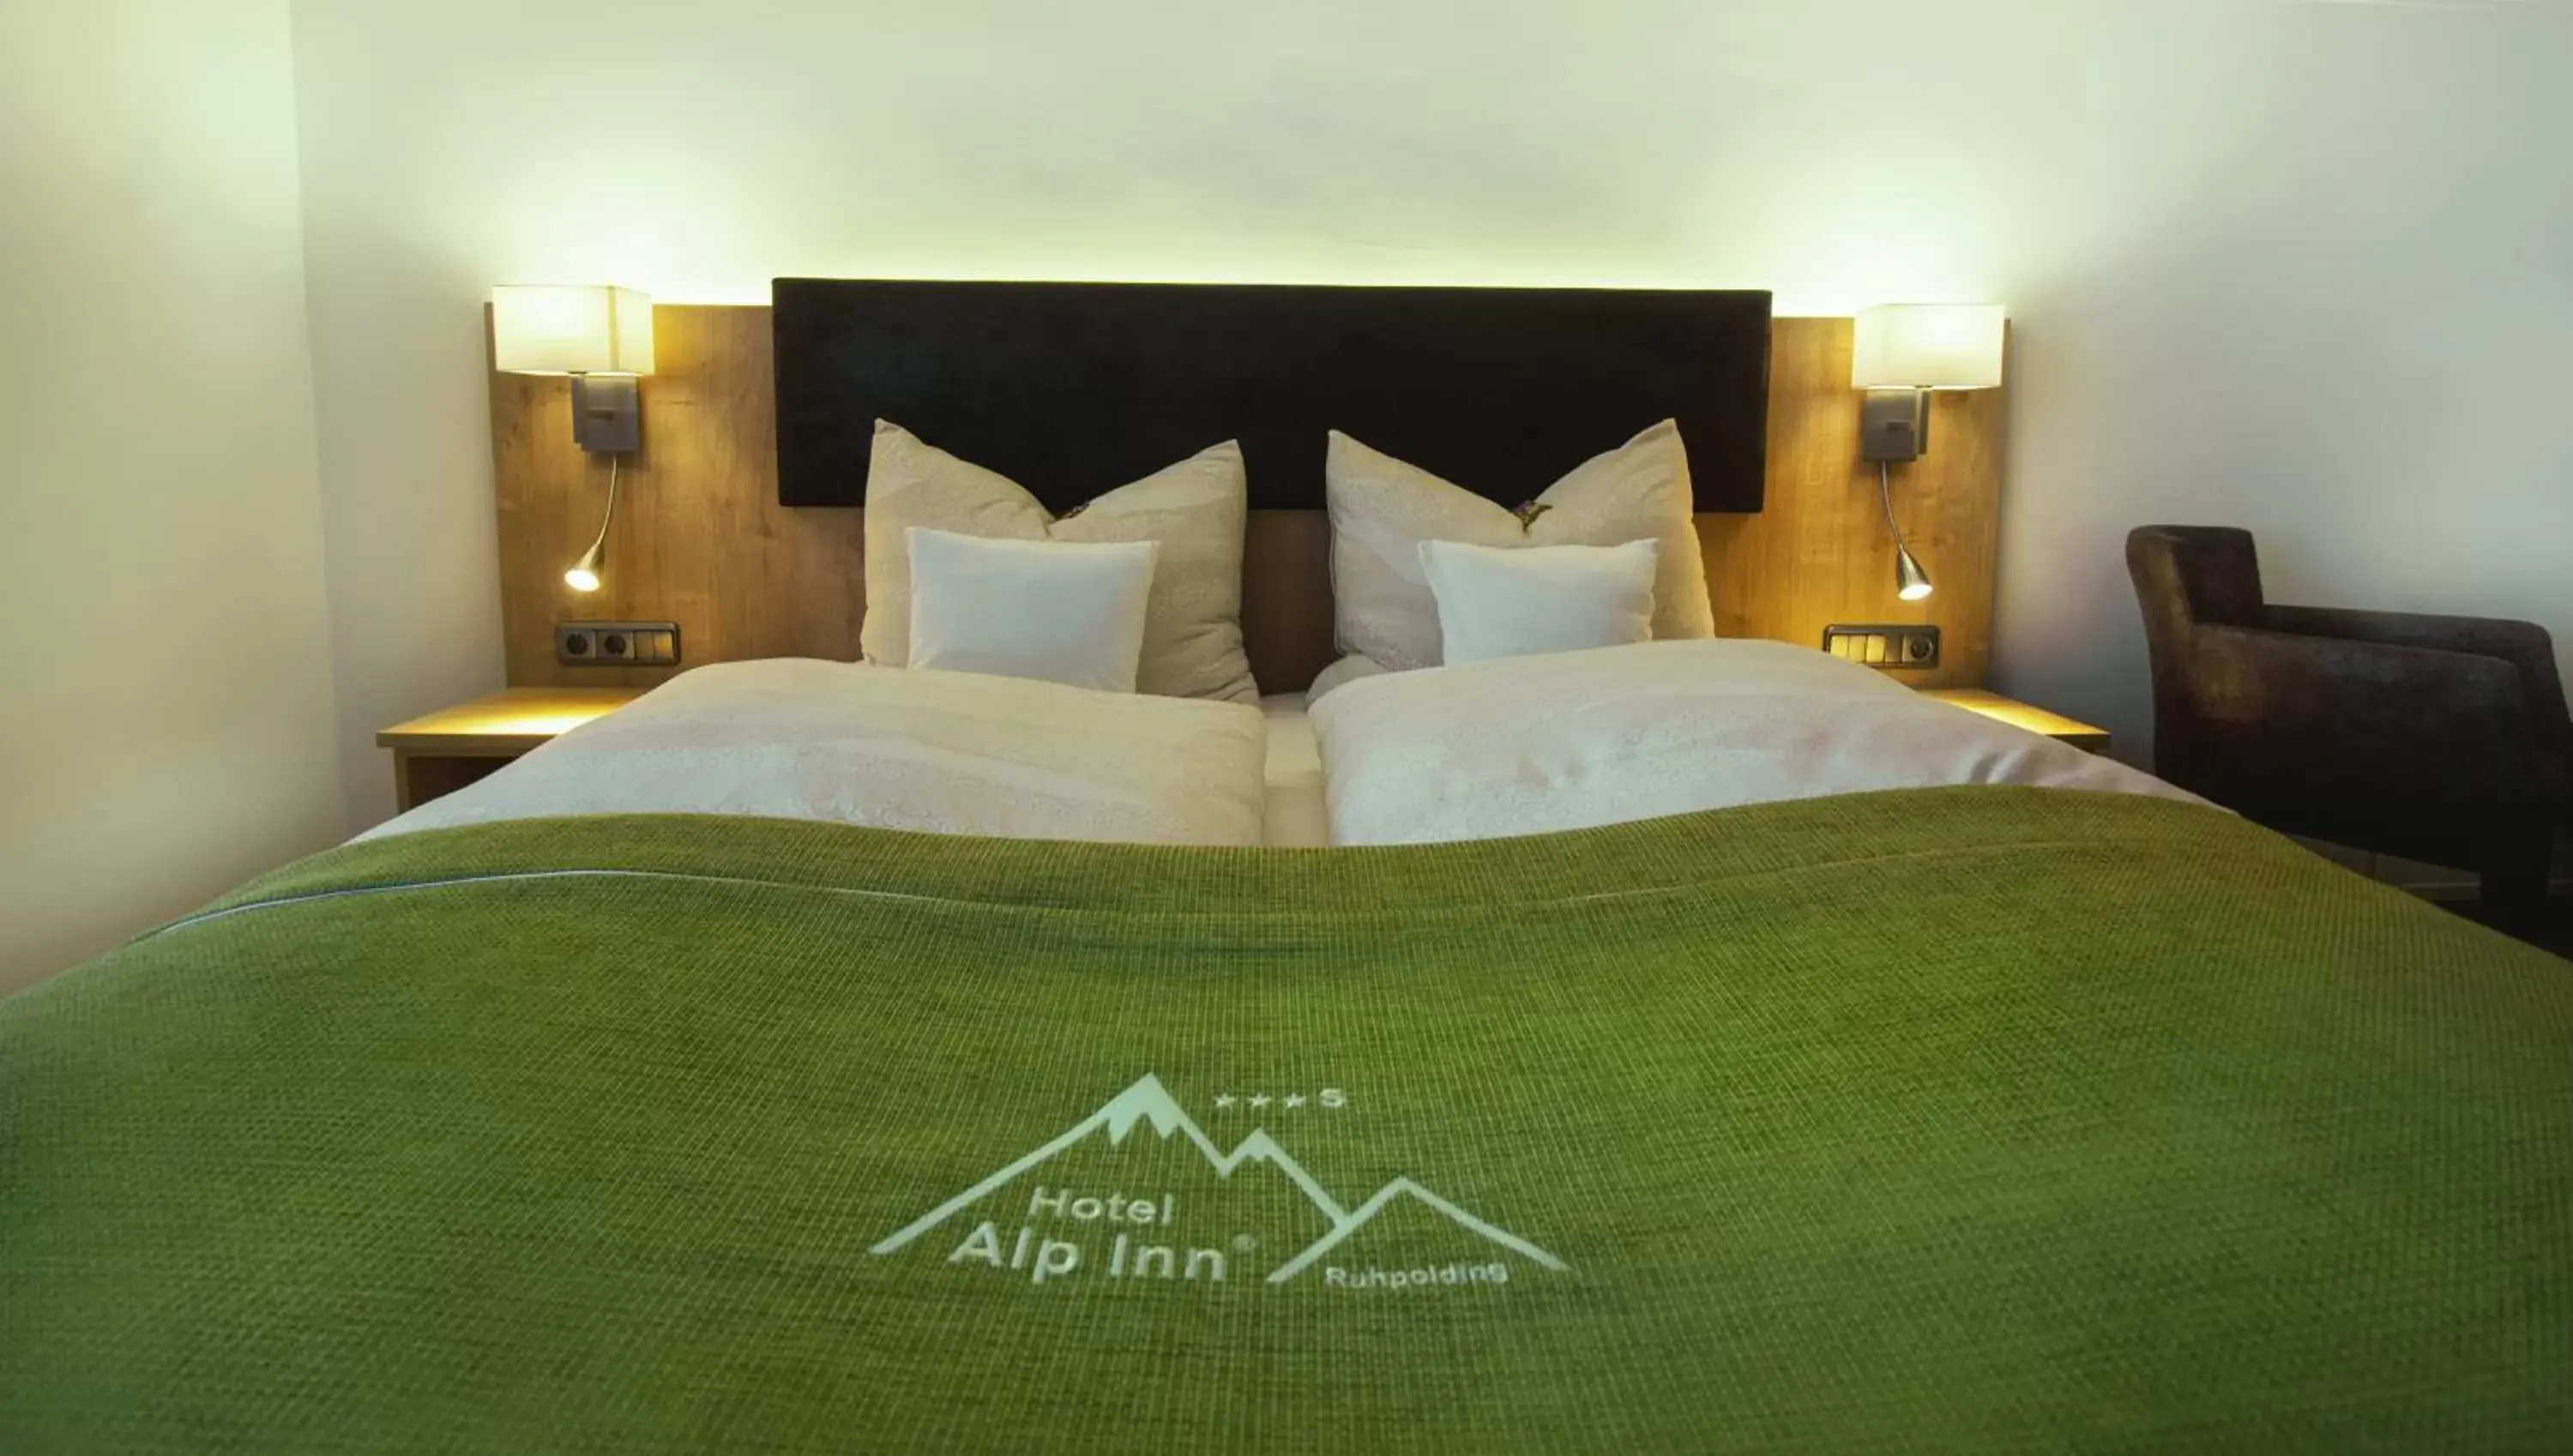 Bed in Hotel Alp Inn